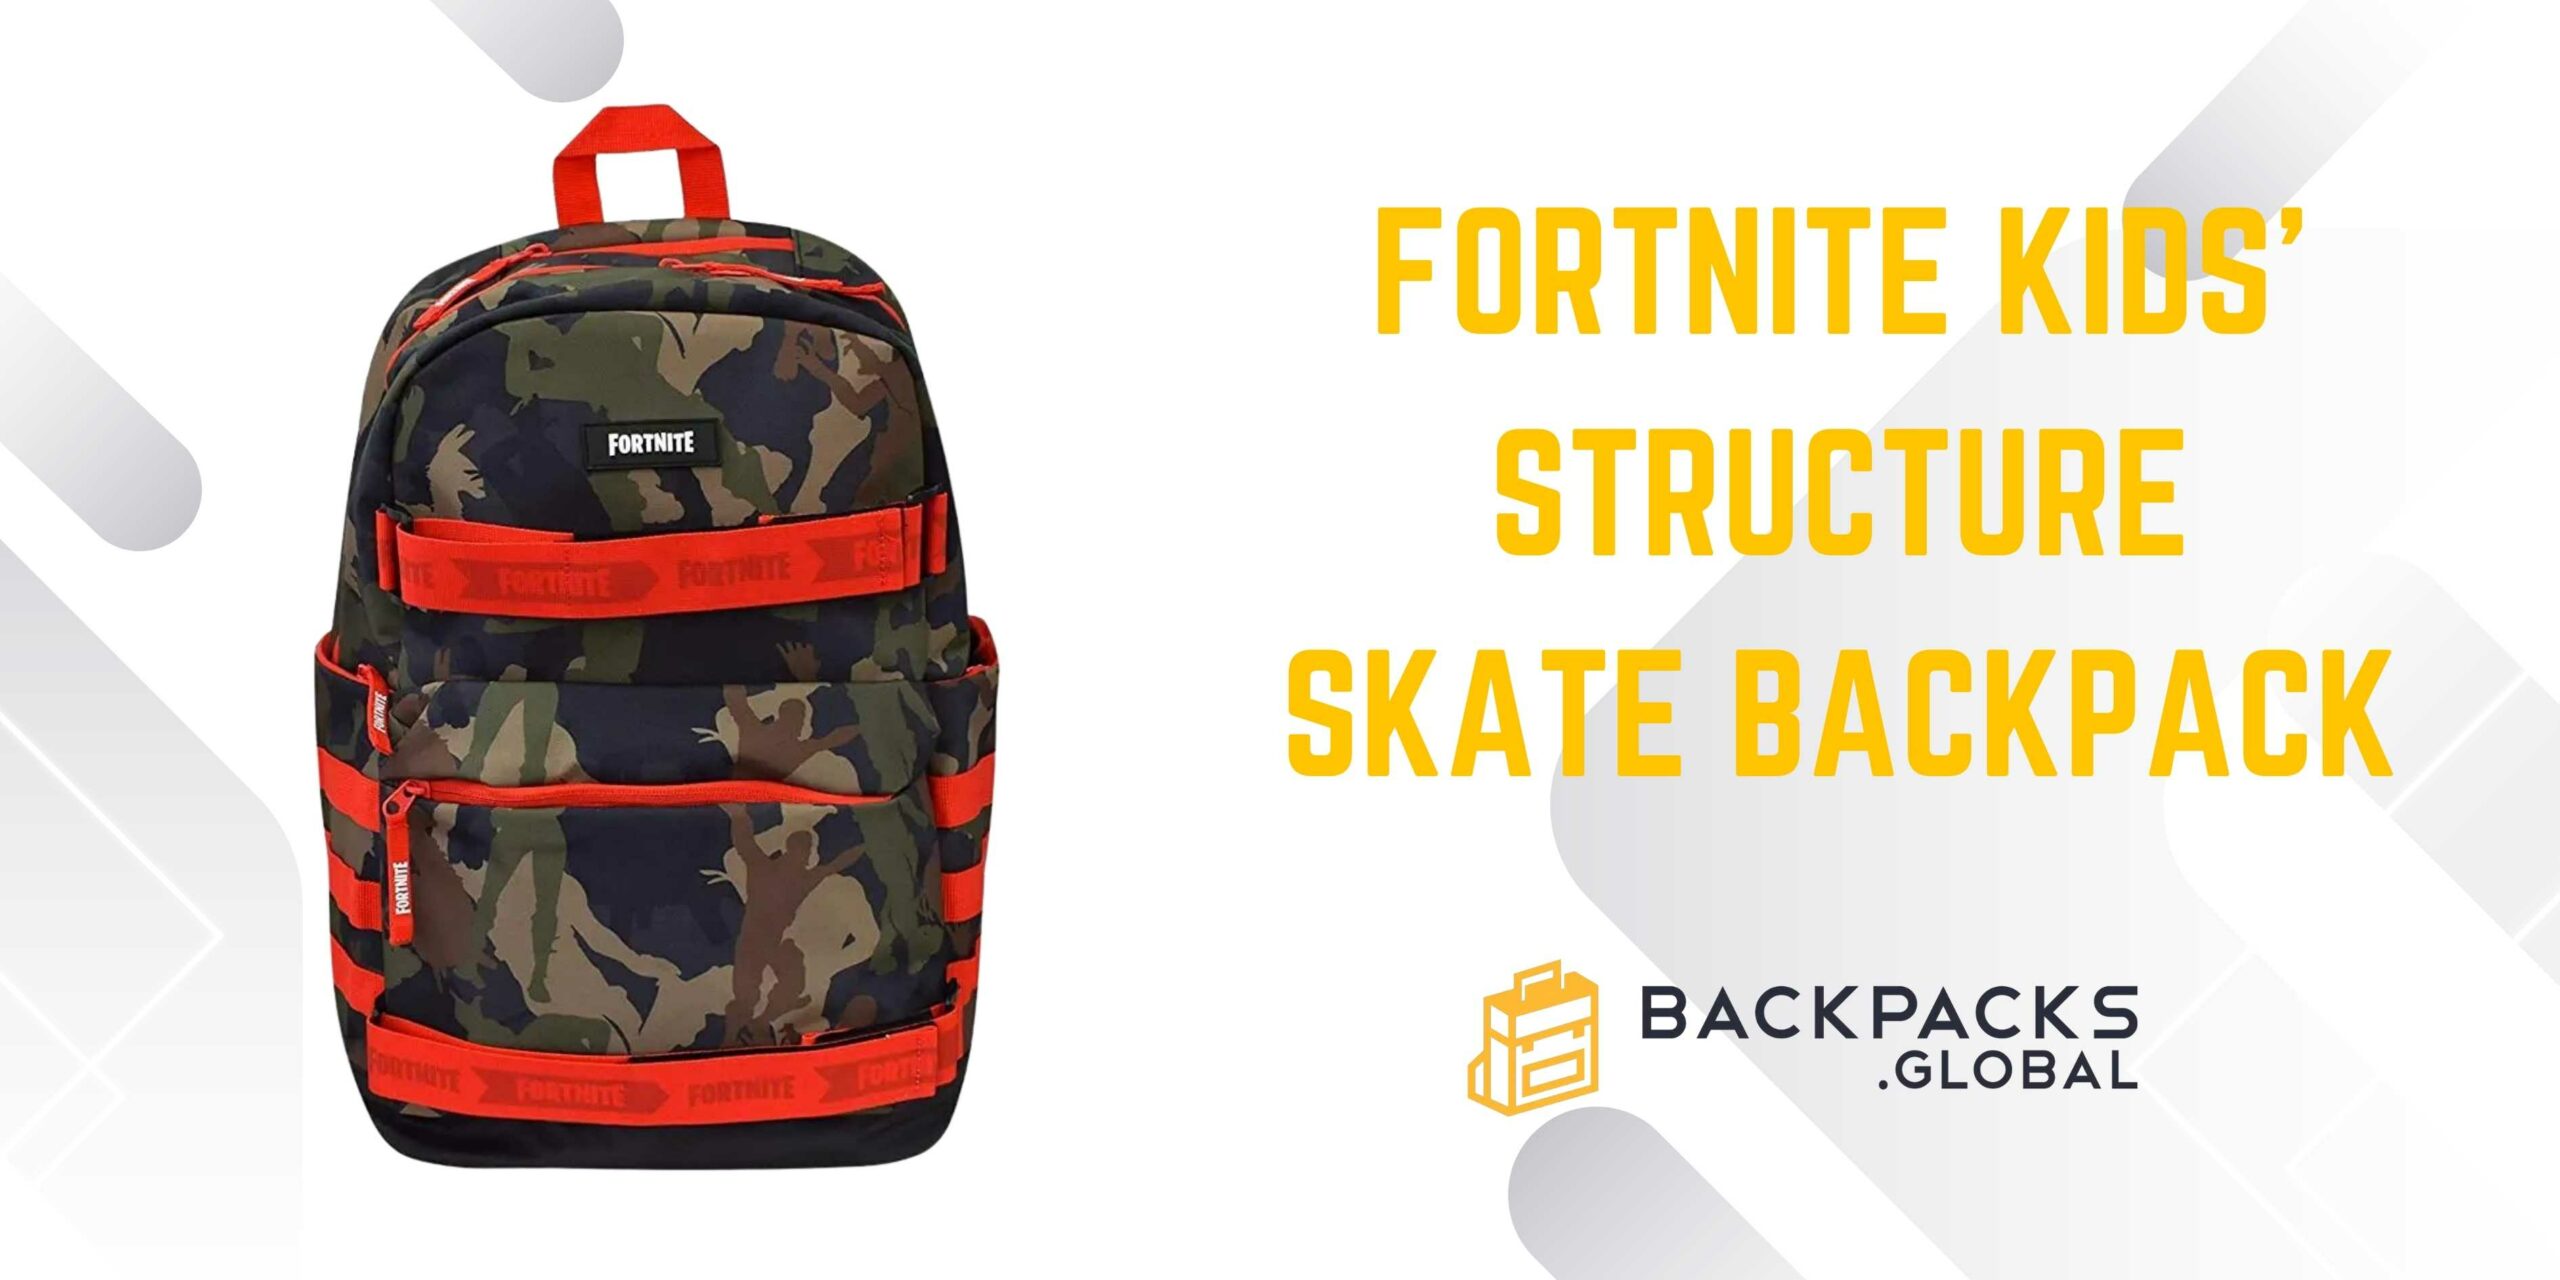 Fortnite Kids’ Structure Skate Backpack